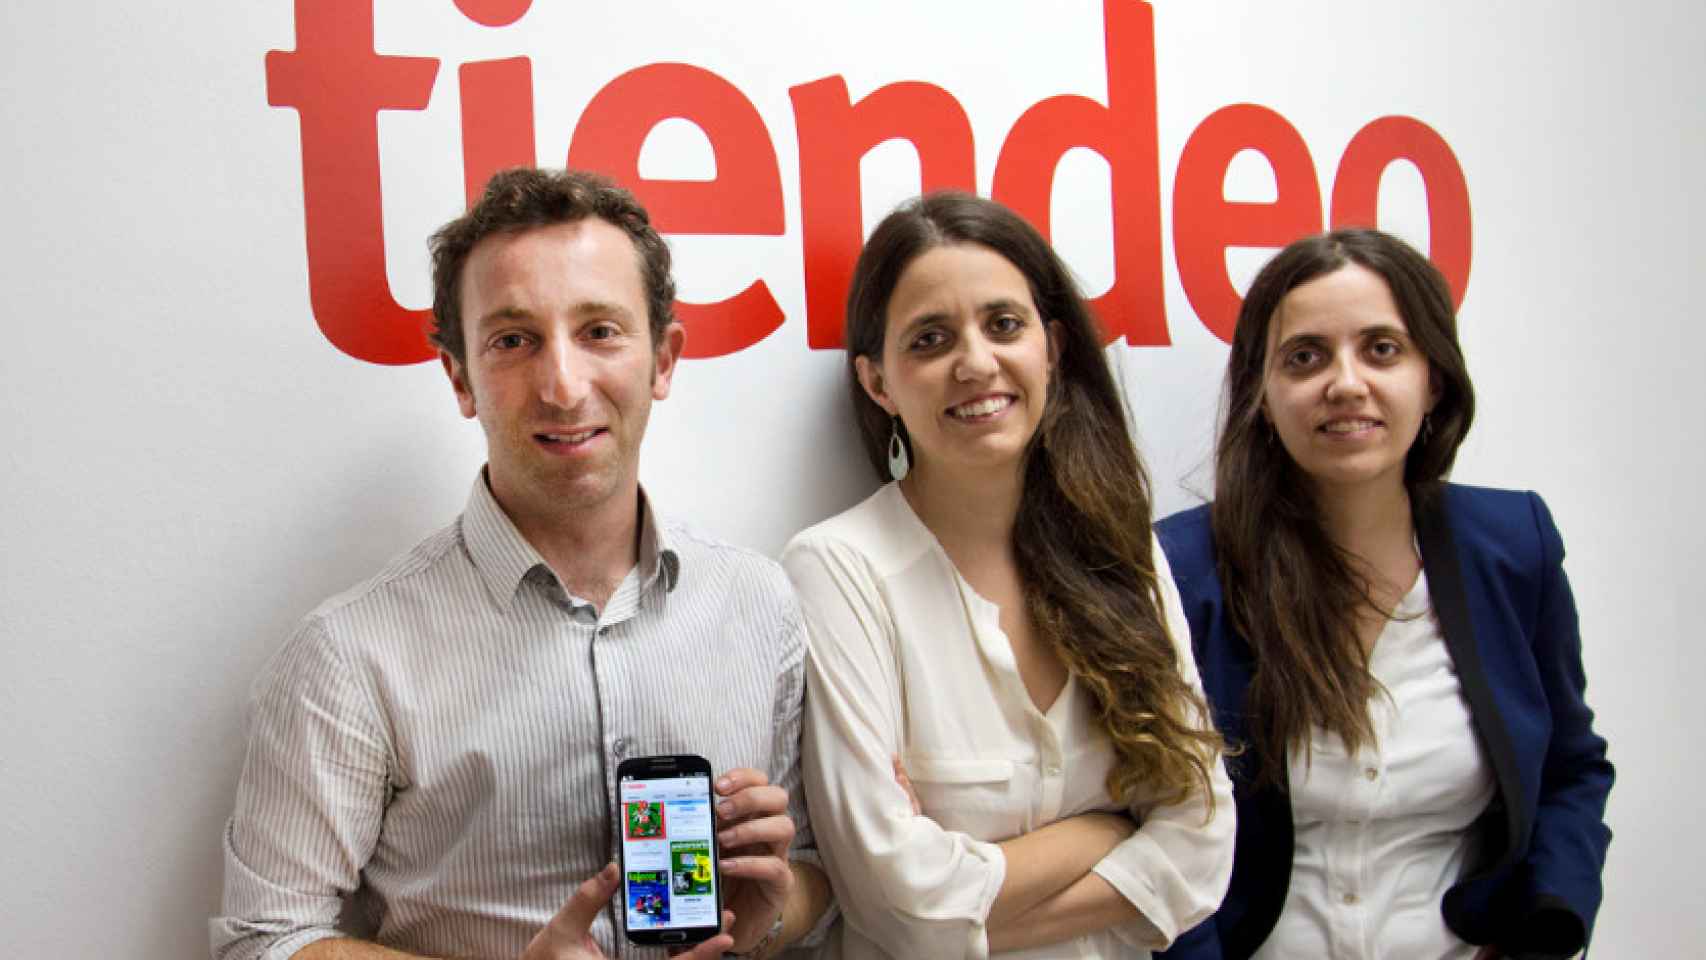 Los fundadores de Tiendeo, Jonathan Lemberger, Eva Martín y María Martín, en una imagen de archivo / CG